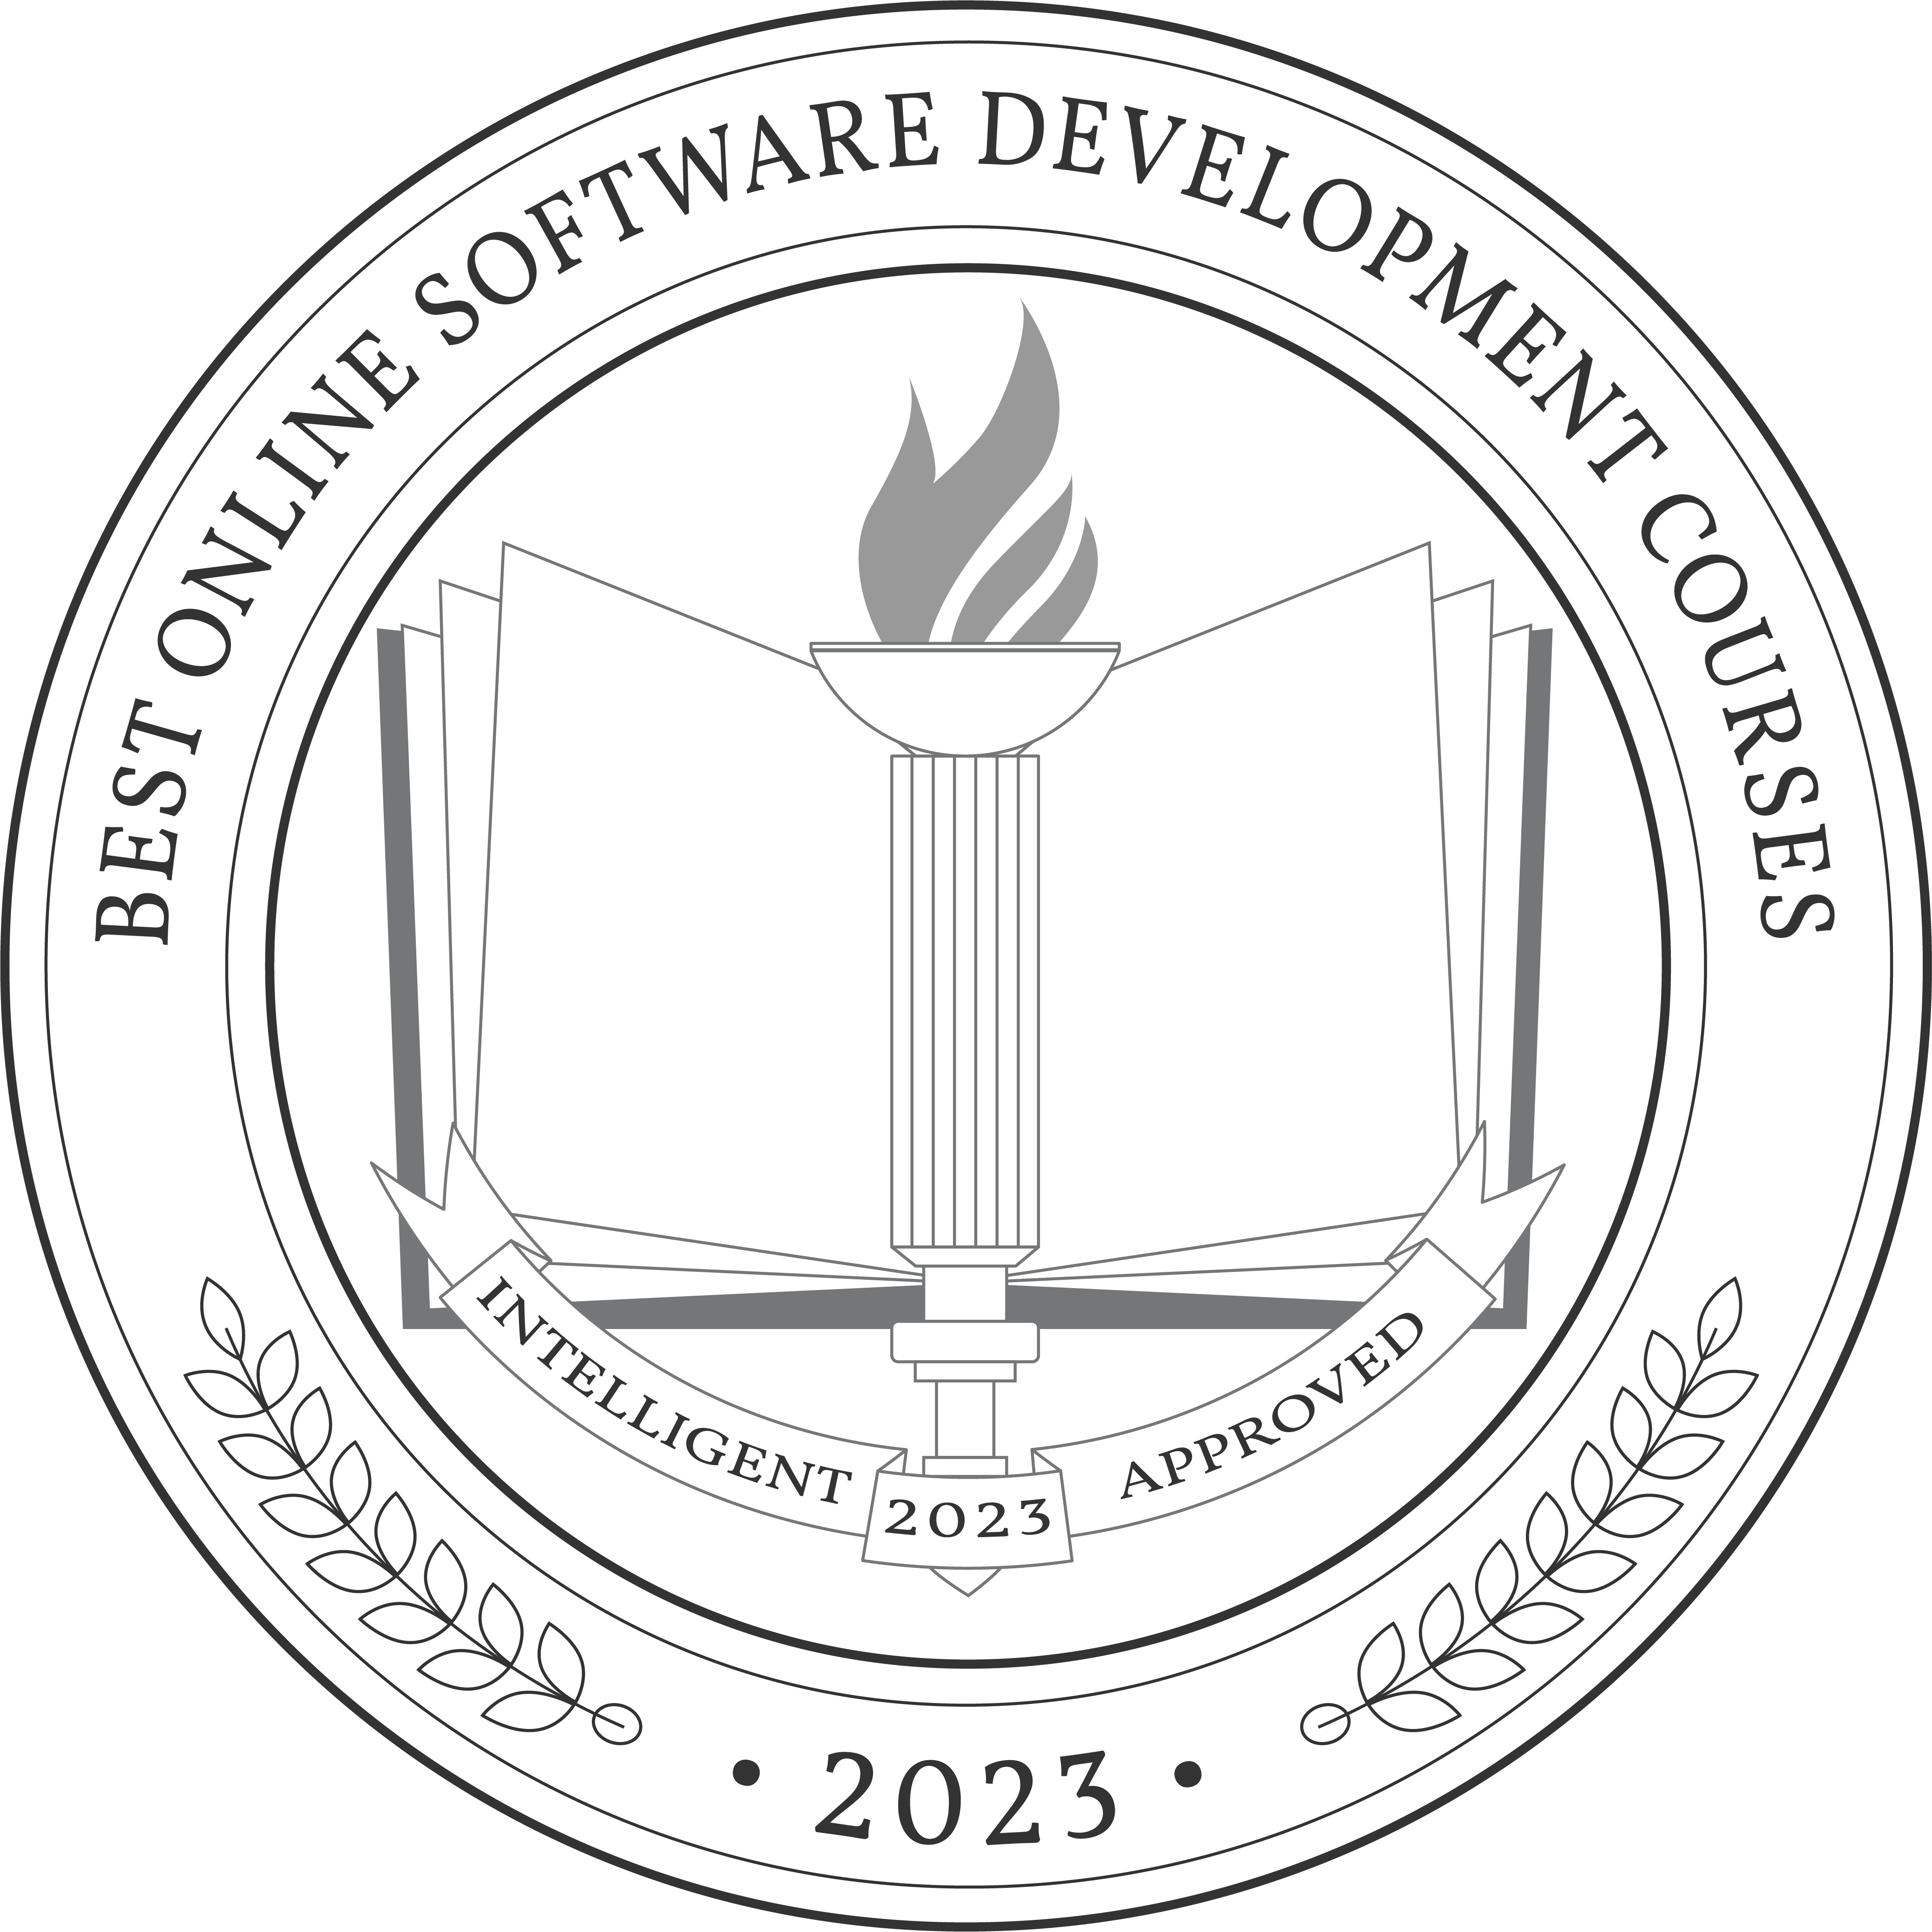 Best Online Software Development Courses badge